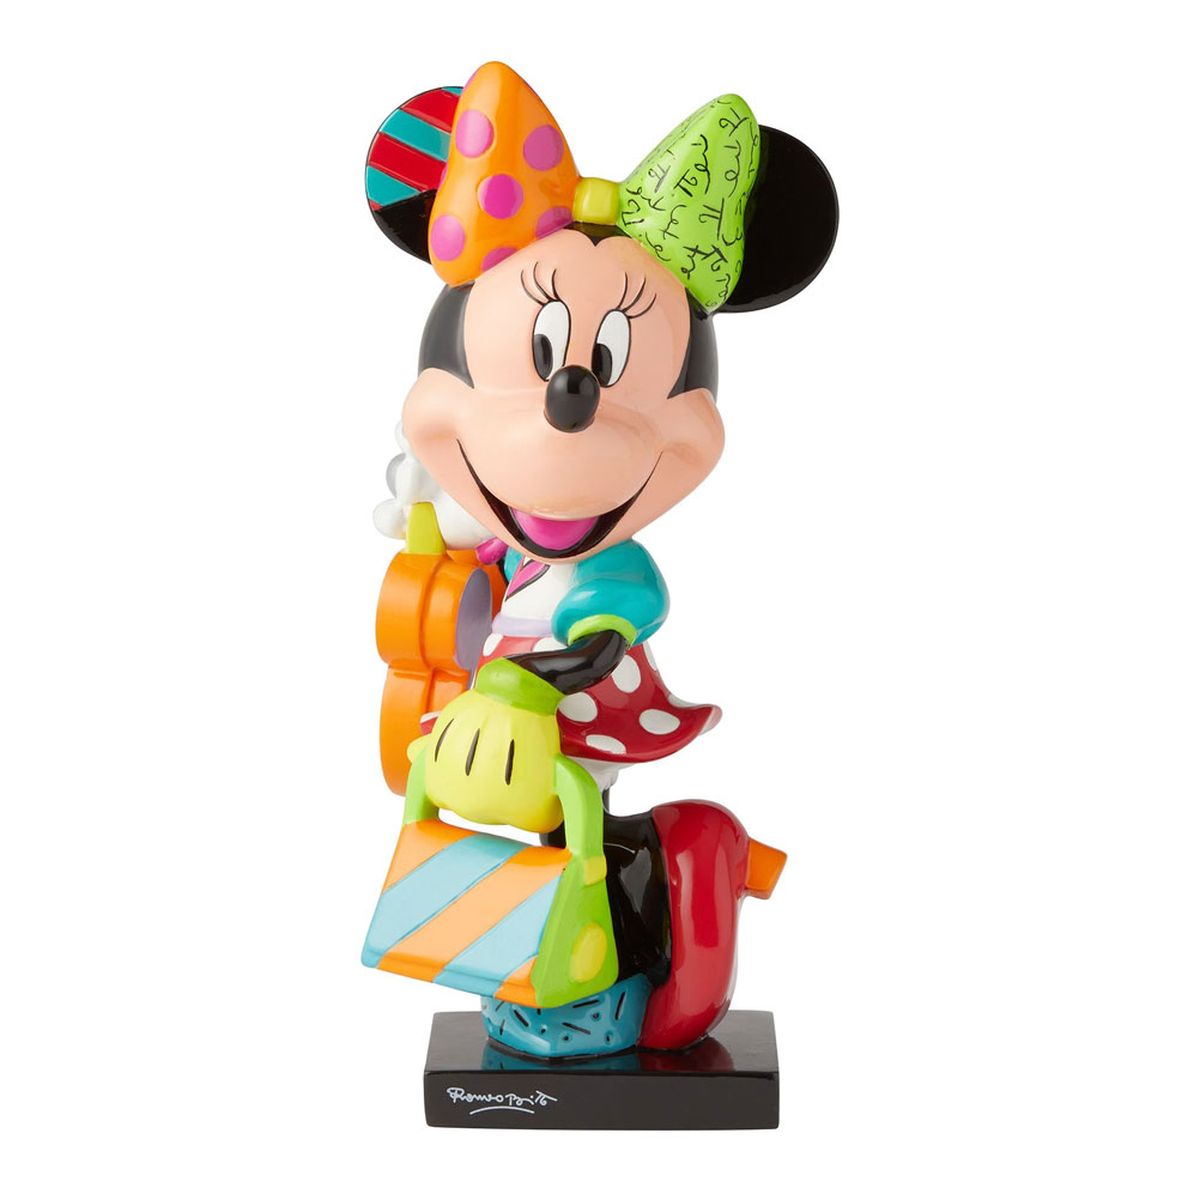 Minnie Mouse Fashionista Figurine - Romero Britto